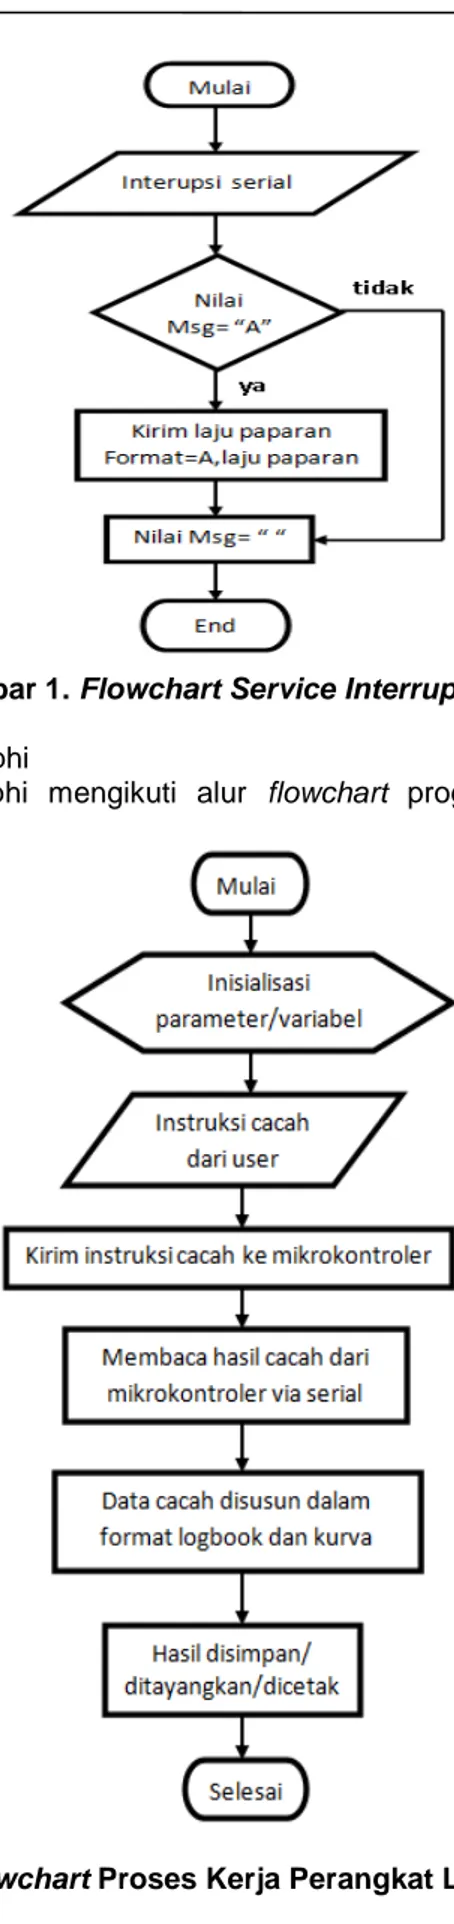 Gambar 1. Flowchart Service Interrupt Urxc  2.  Perancangan program Delphi  